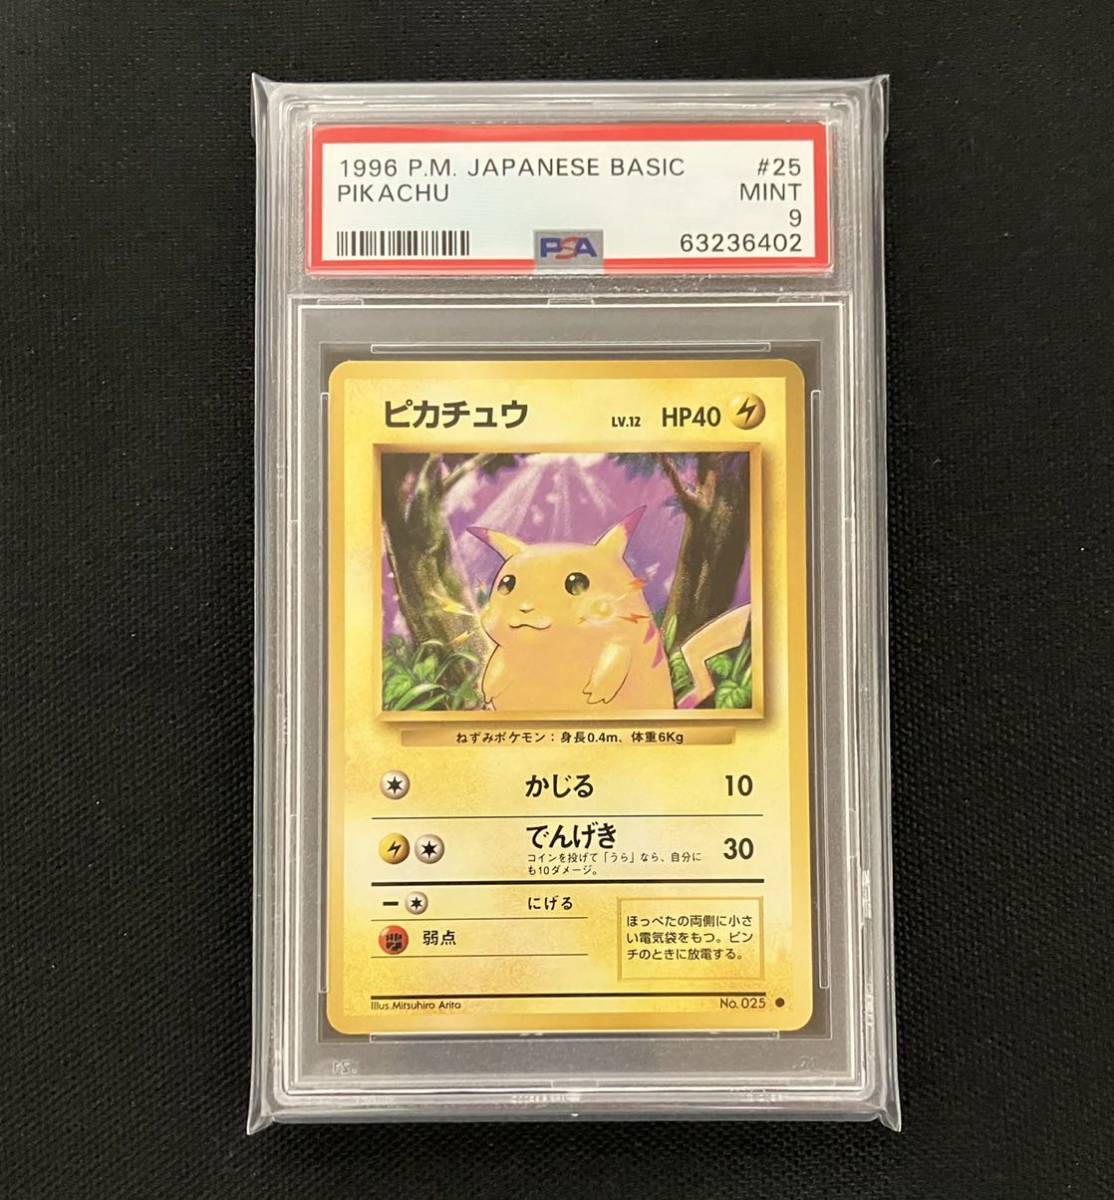 ポケモンカード ピカチュウ PSA9 旧裏 pokemon cards PIKACHU Japanese